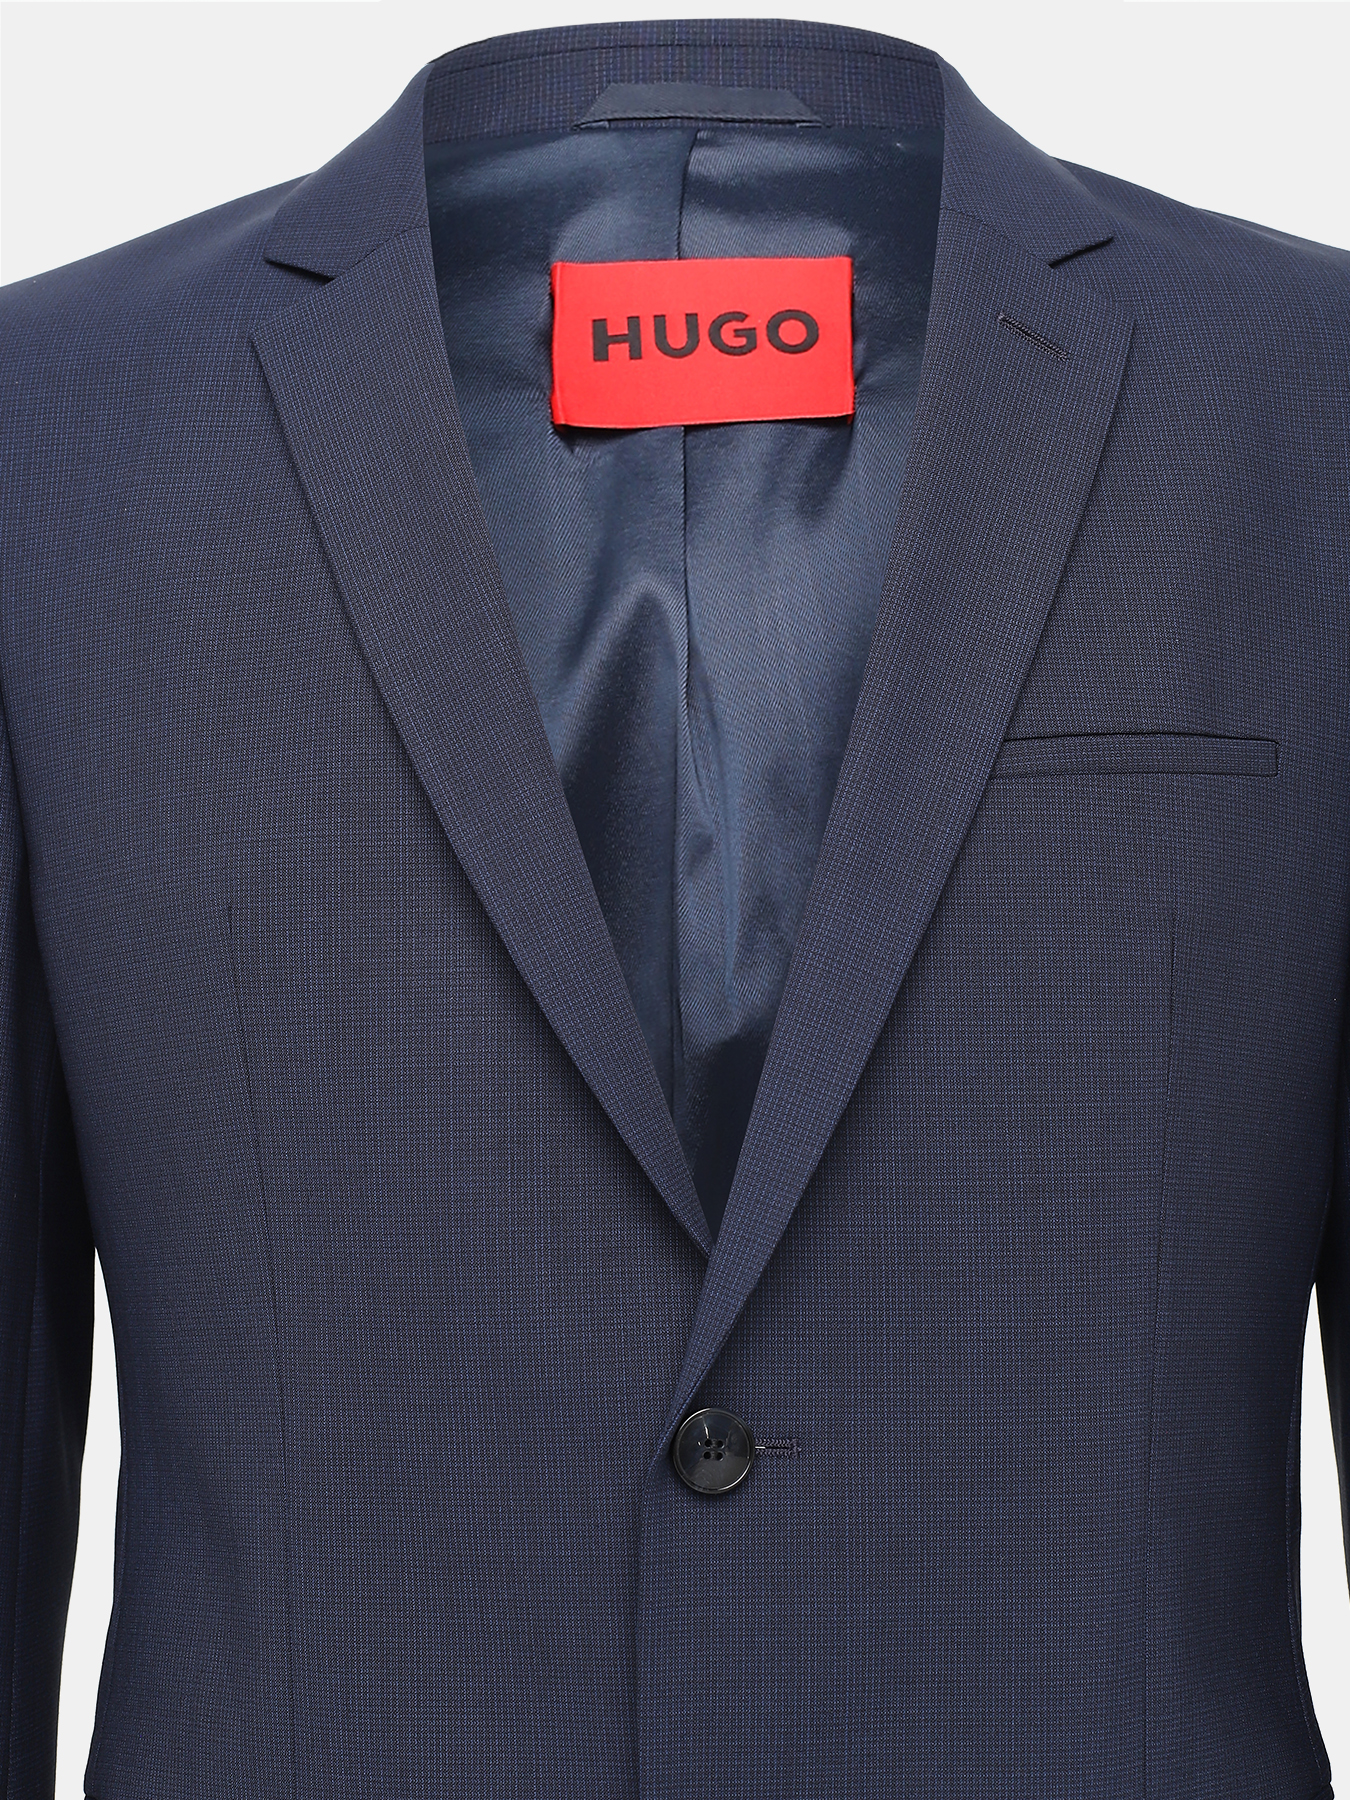 Классический костюм Arti/Hesten HUGO 421896-026, цвет темно-синий, размер 50 Классический костюм Arti/Hesten - фото 4